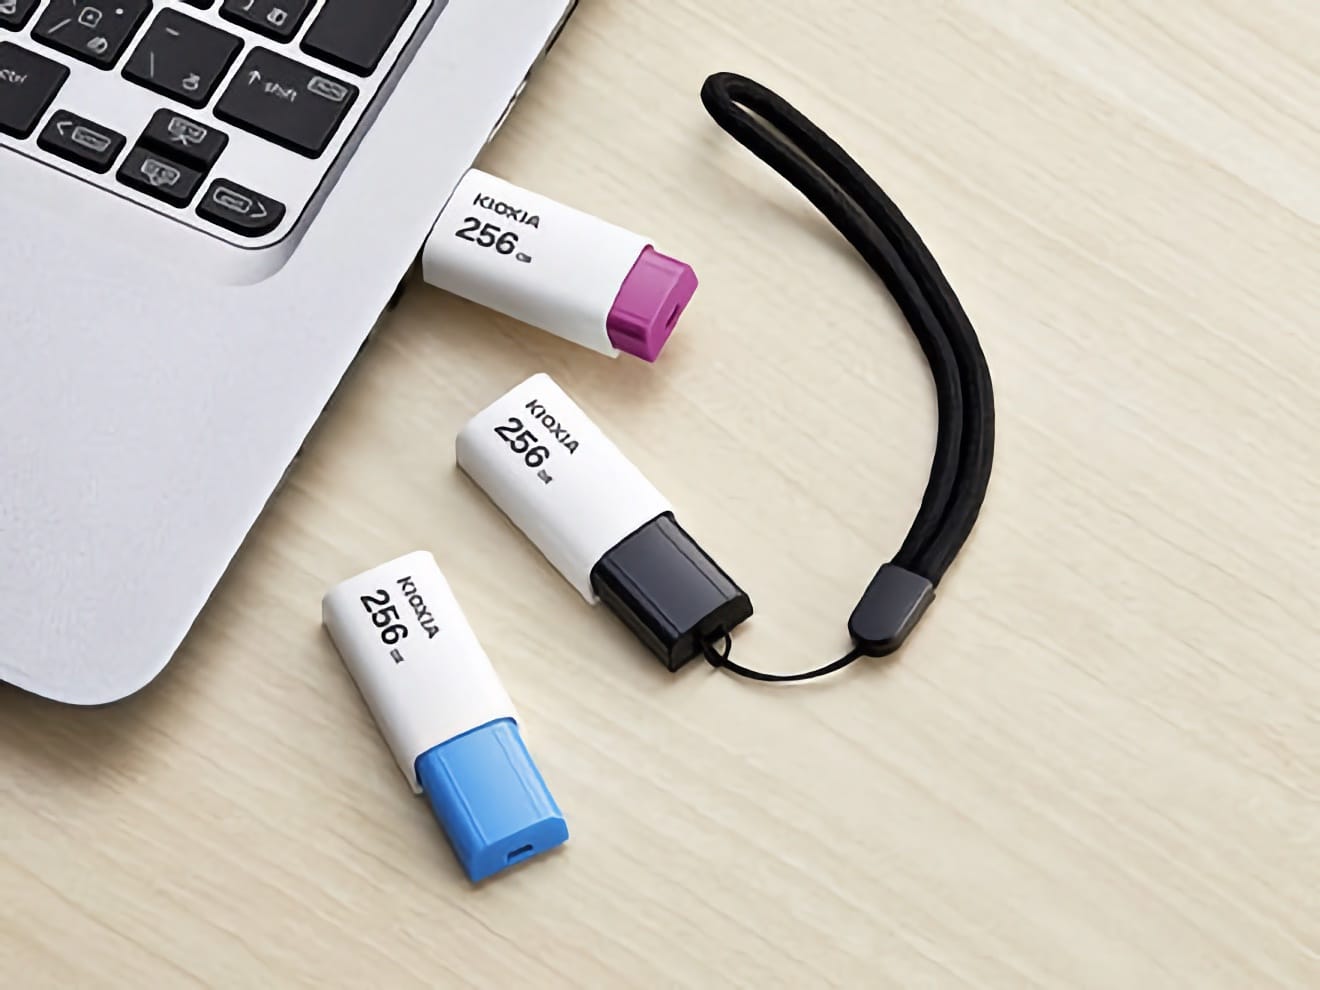 Kioxia unveils TransMemory U304 USB flash drive